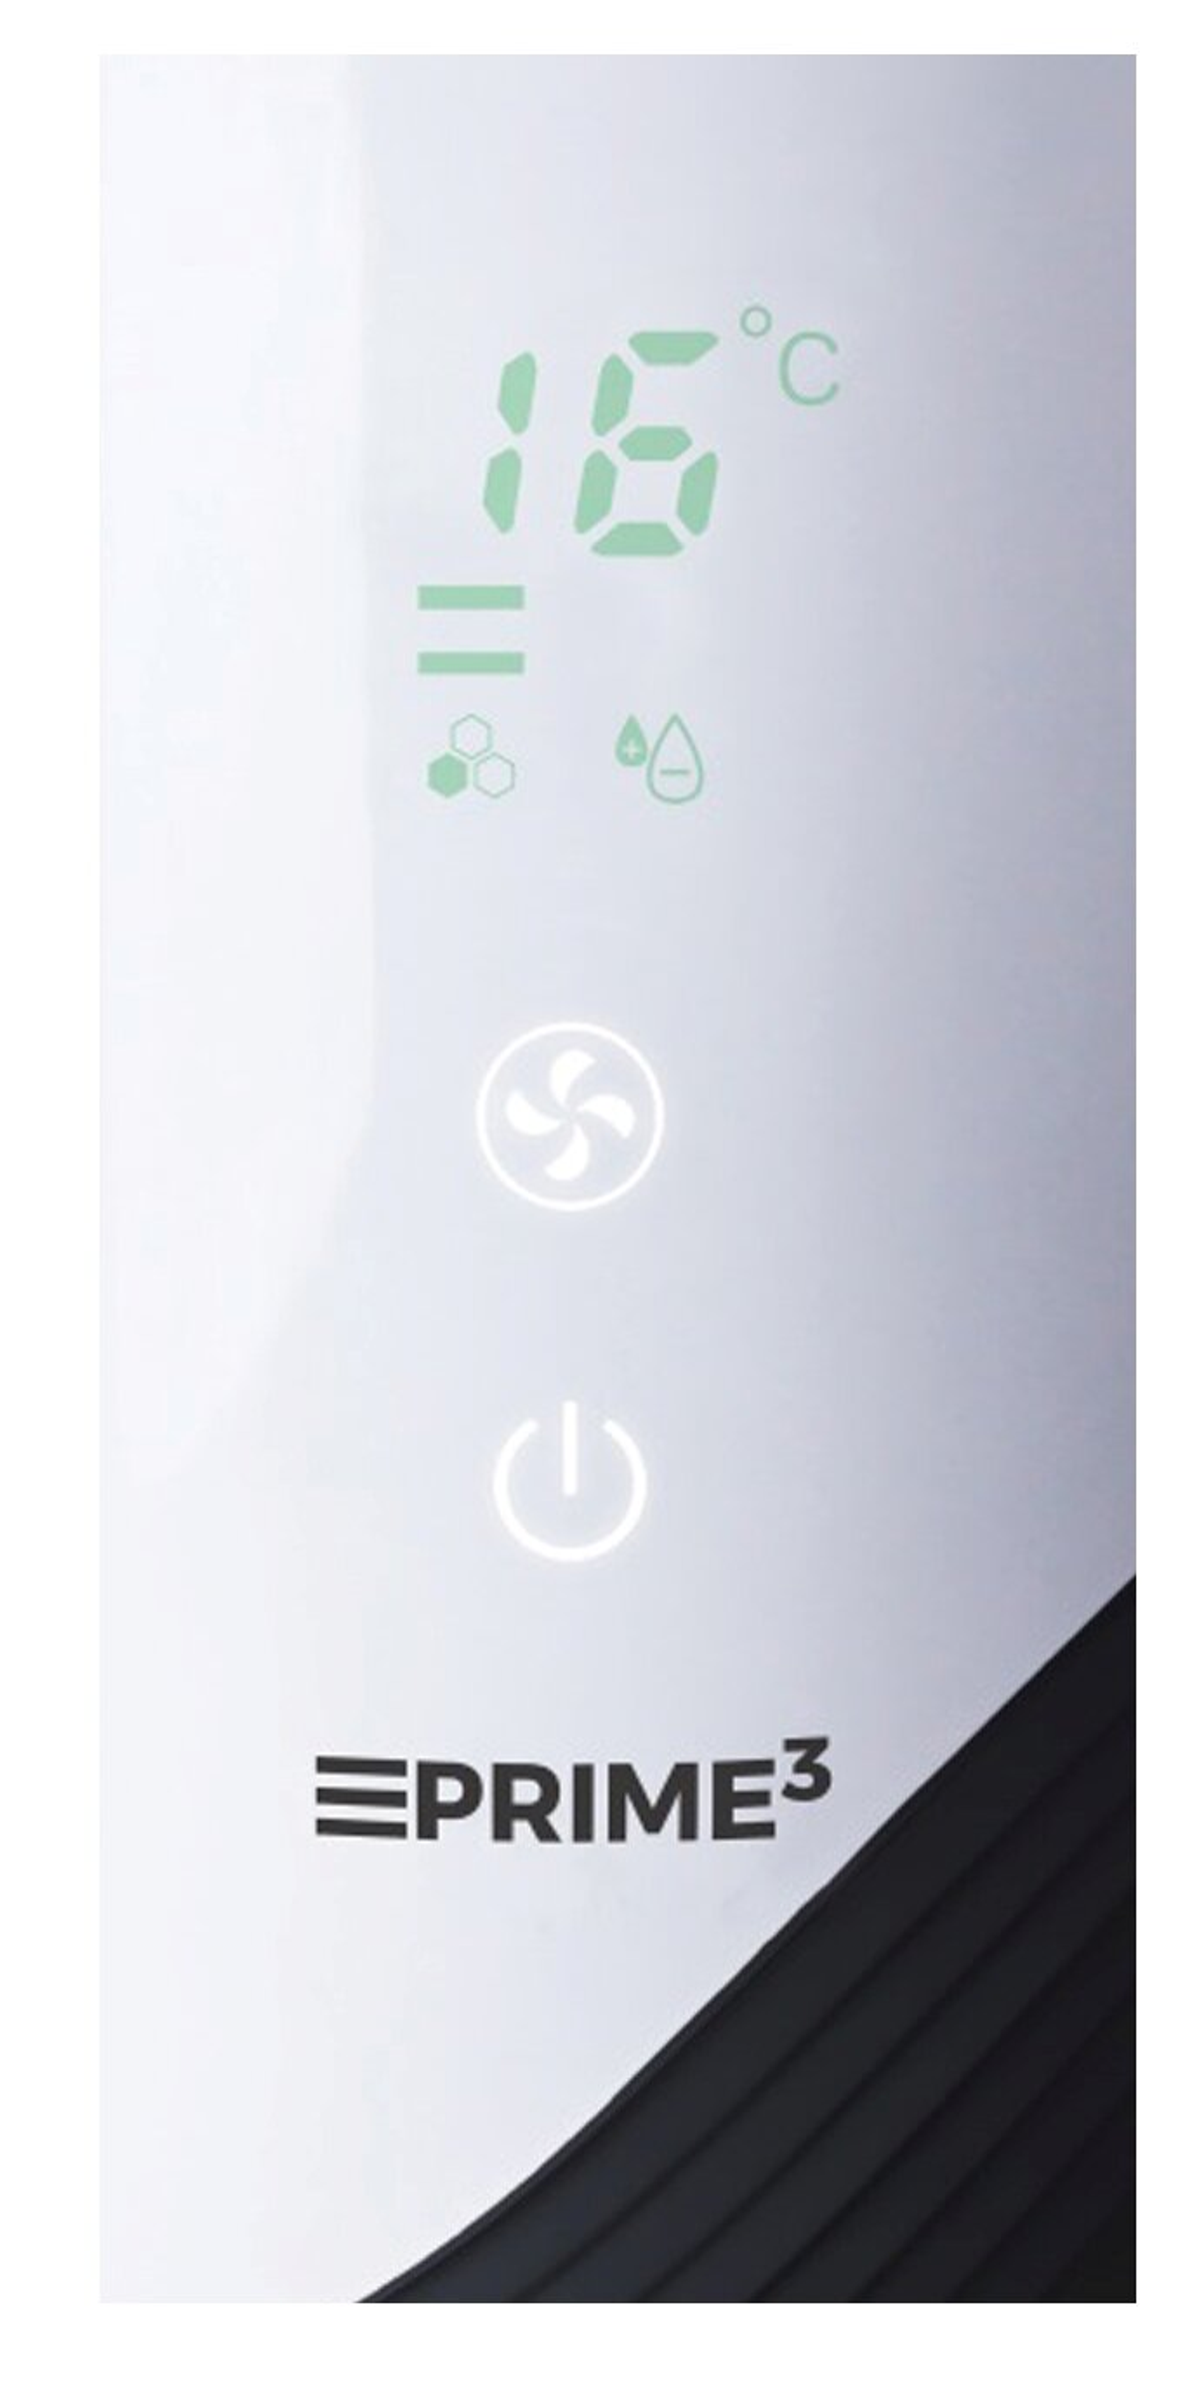 PRIME3 SAP11 Luftreiniger (3,5 Watt) Weiß